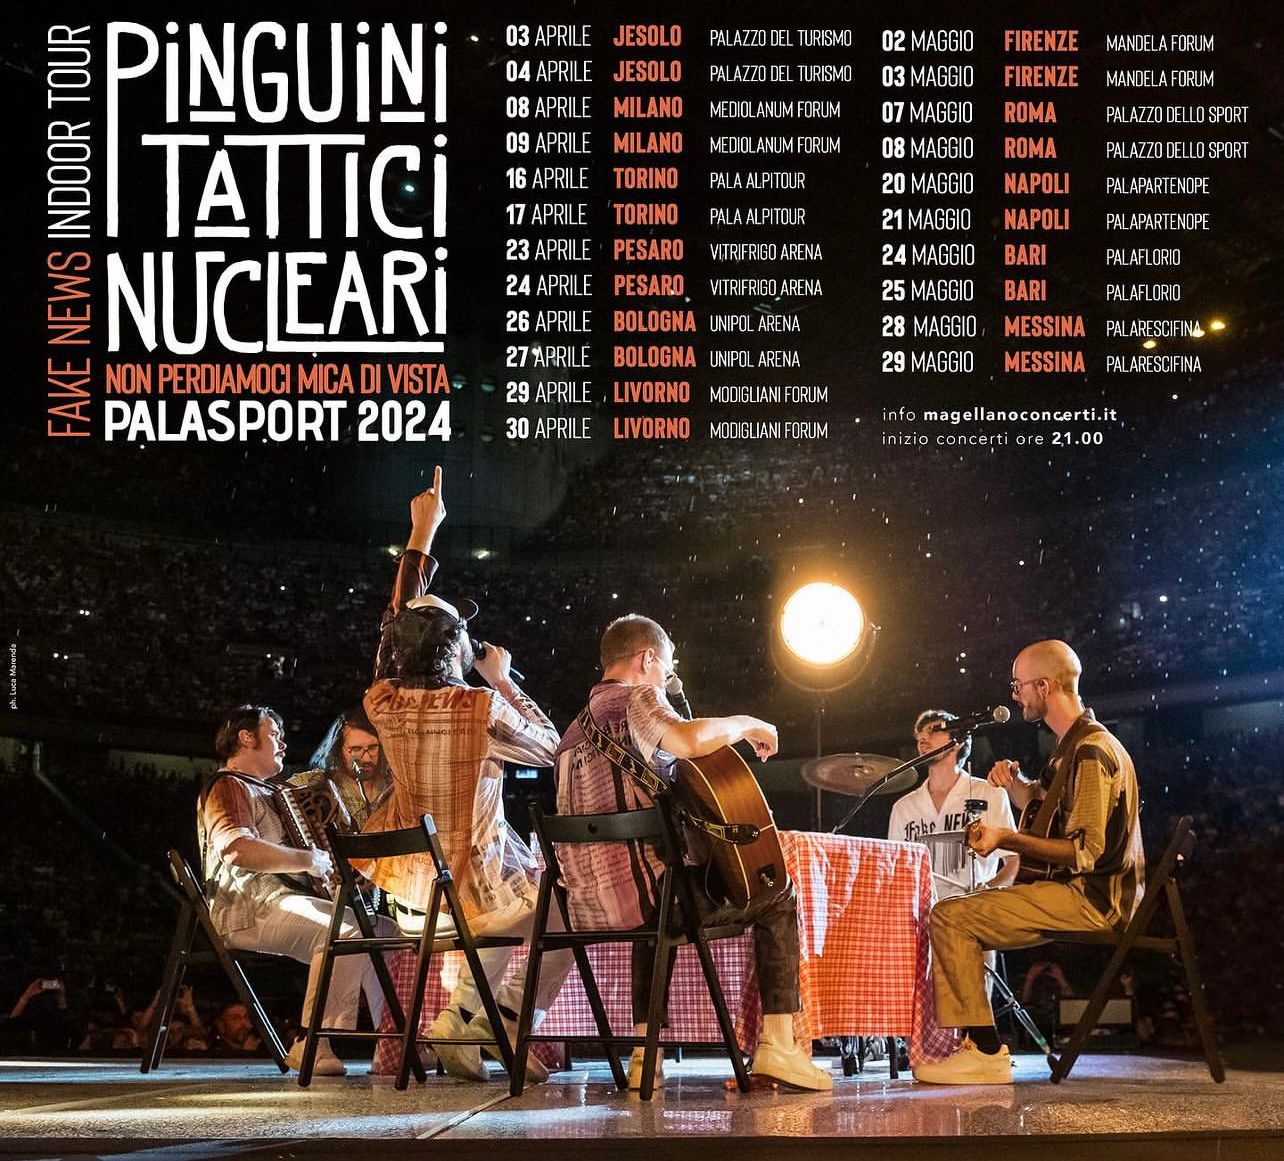 PINGUINI TATTICI NUCLEARI, annunciato il nuovo tour che farà tappa a Napoli  per due concerti, il 20 e 21 maggio 2024 - Sound Contest